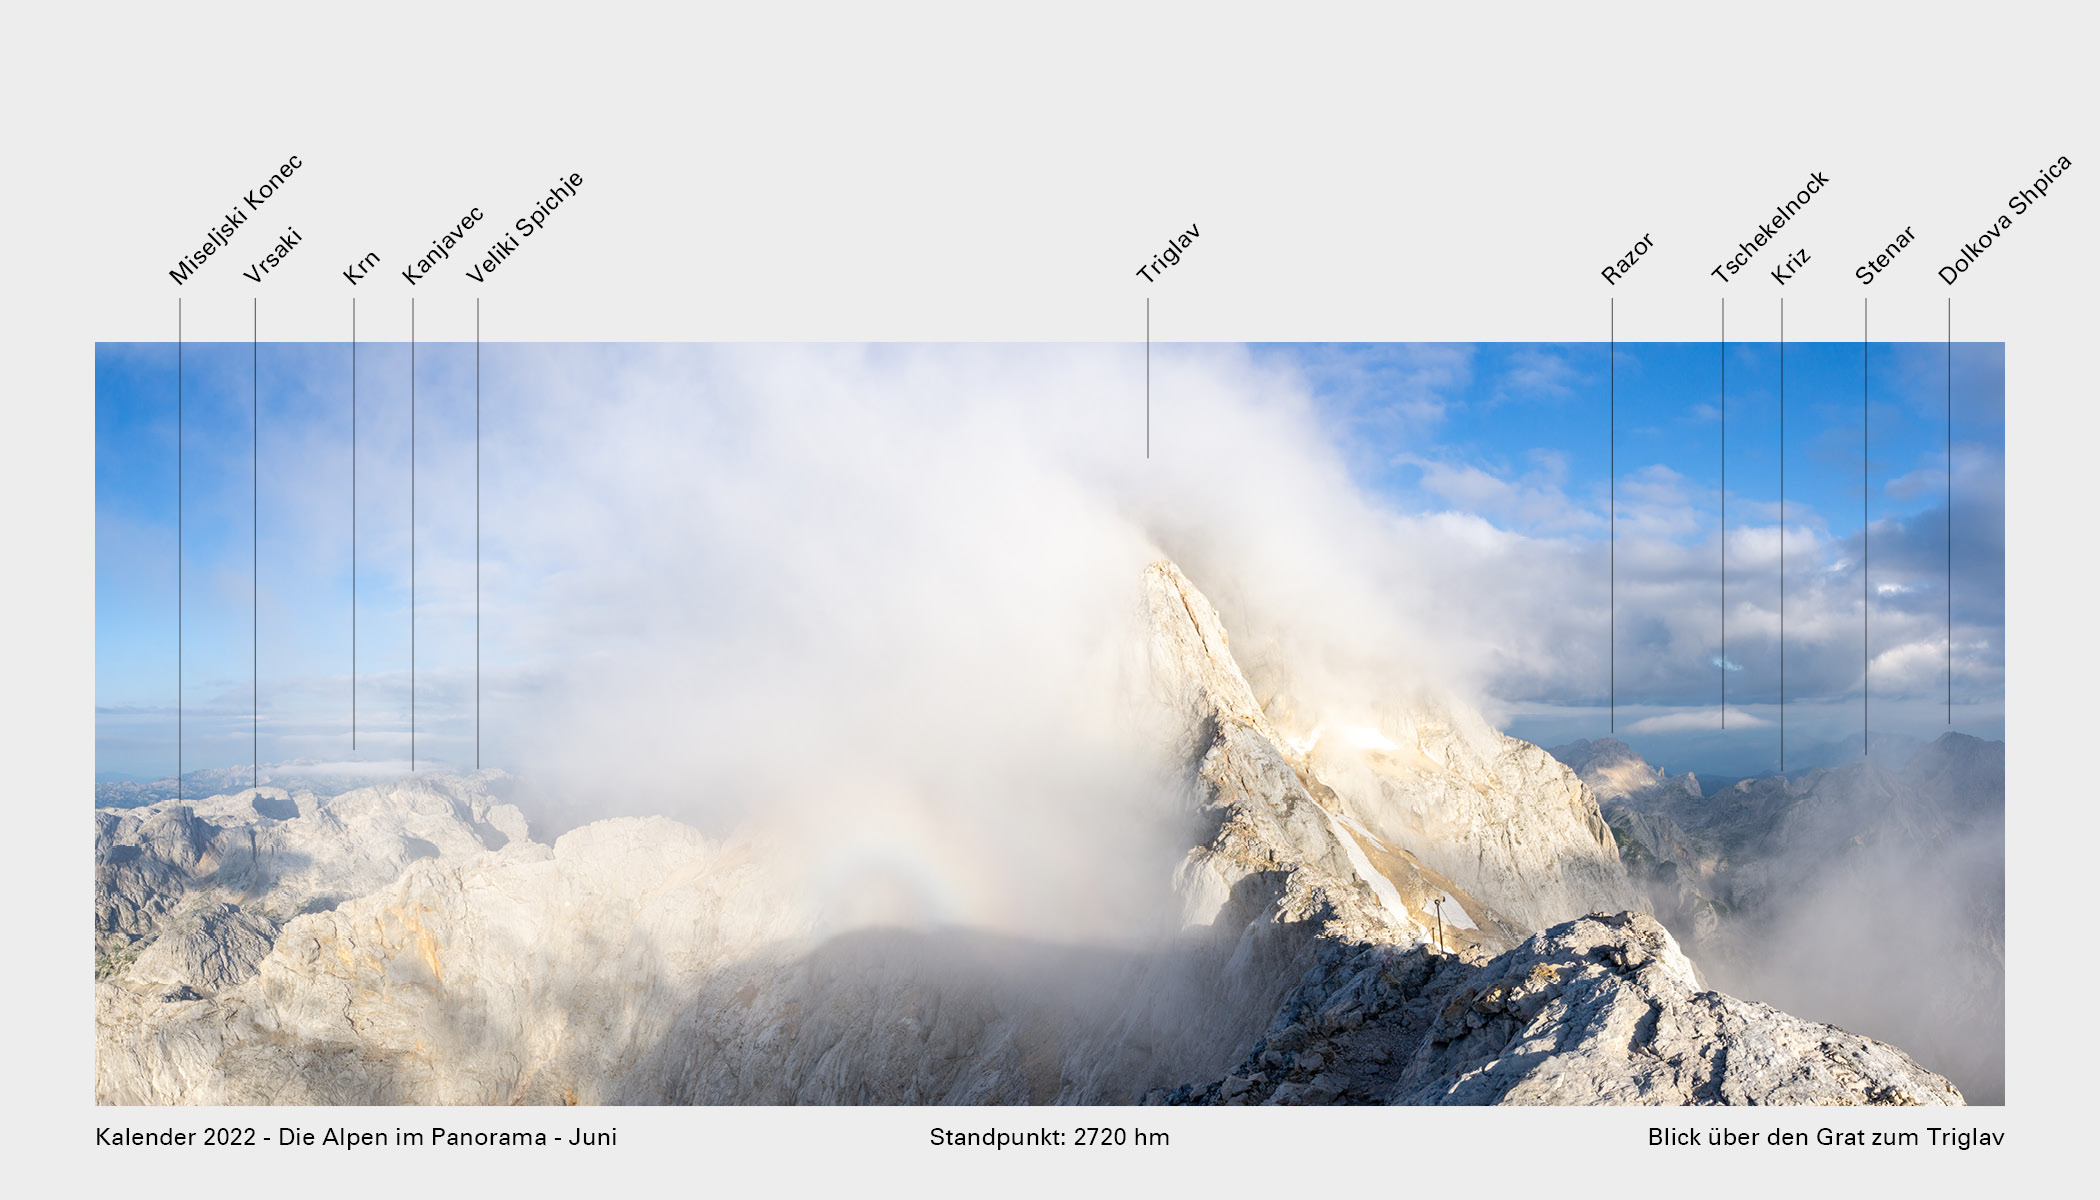 Kalender_2022_Die_Alpen_im_Panorama_Gipfel_6